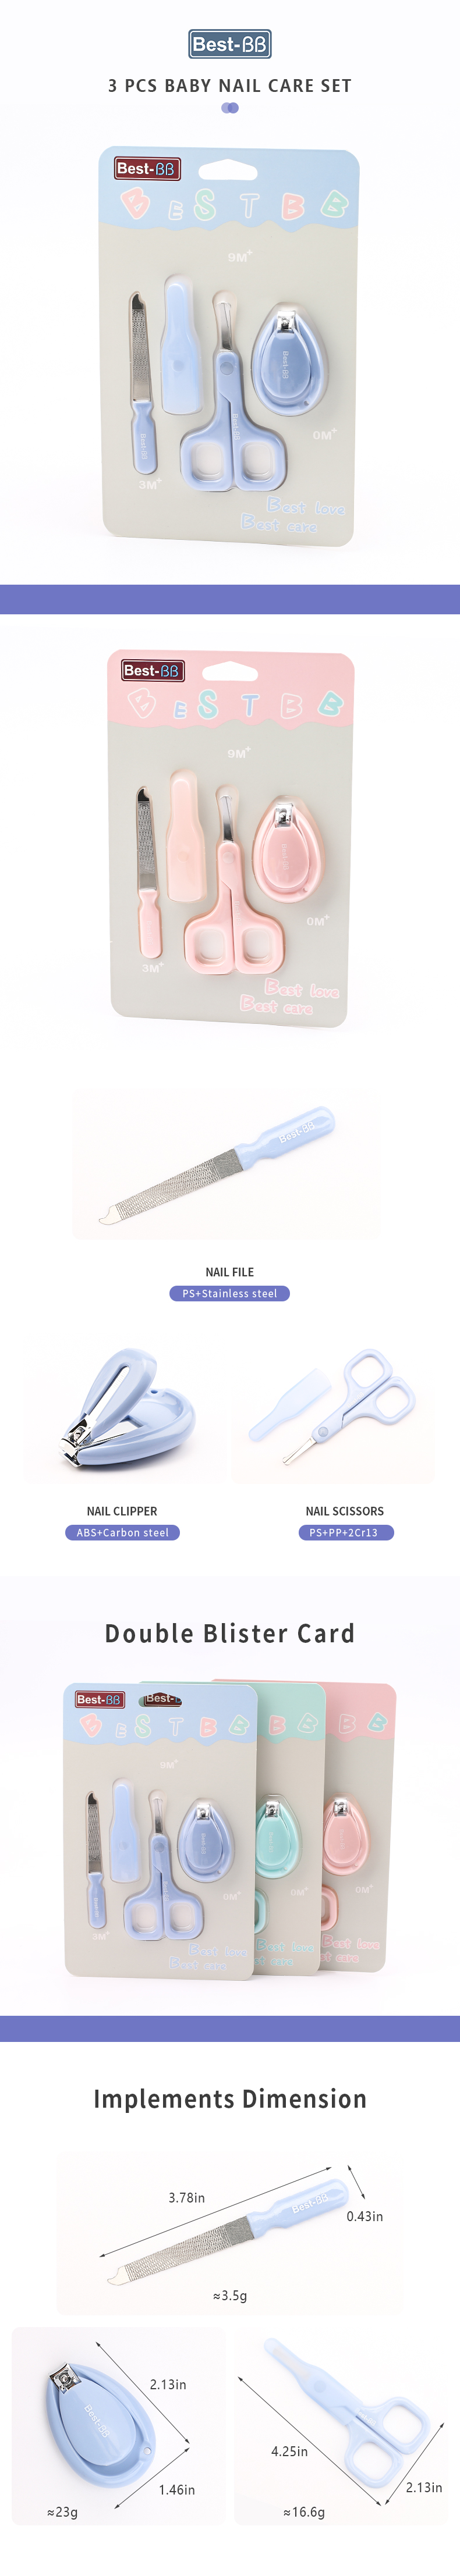 baby nail care kit